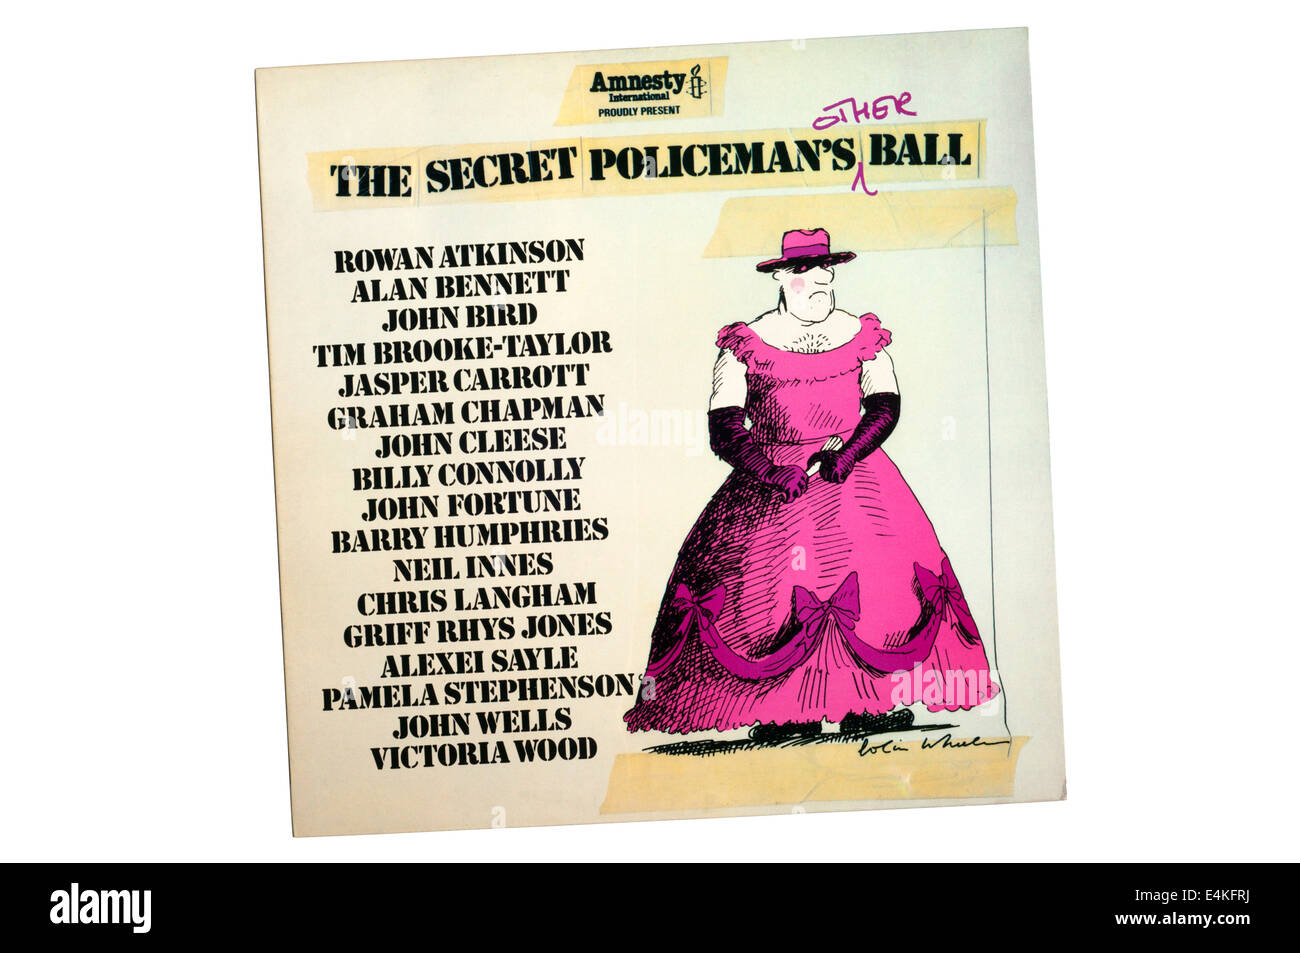 The Secret Policeman es Other Ball war der 4. Vorteil show inszeniert von der britischen Sektion von Amnesty International, 1981. Stockfoto